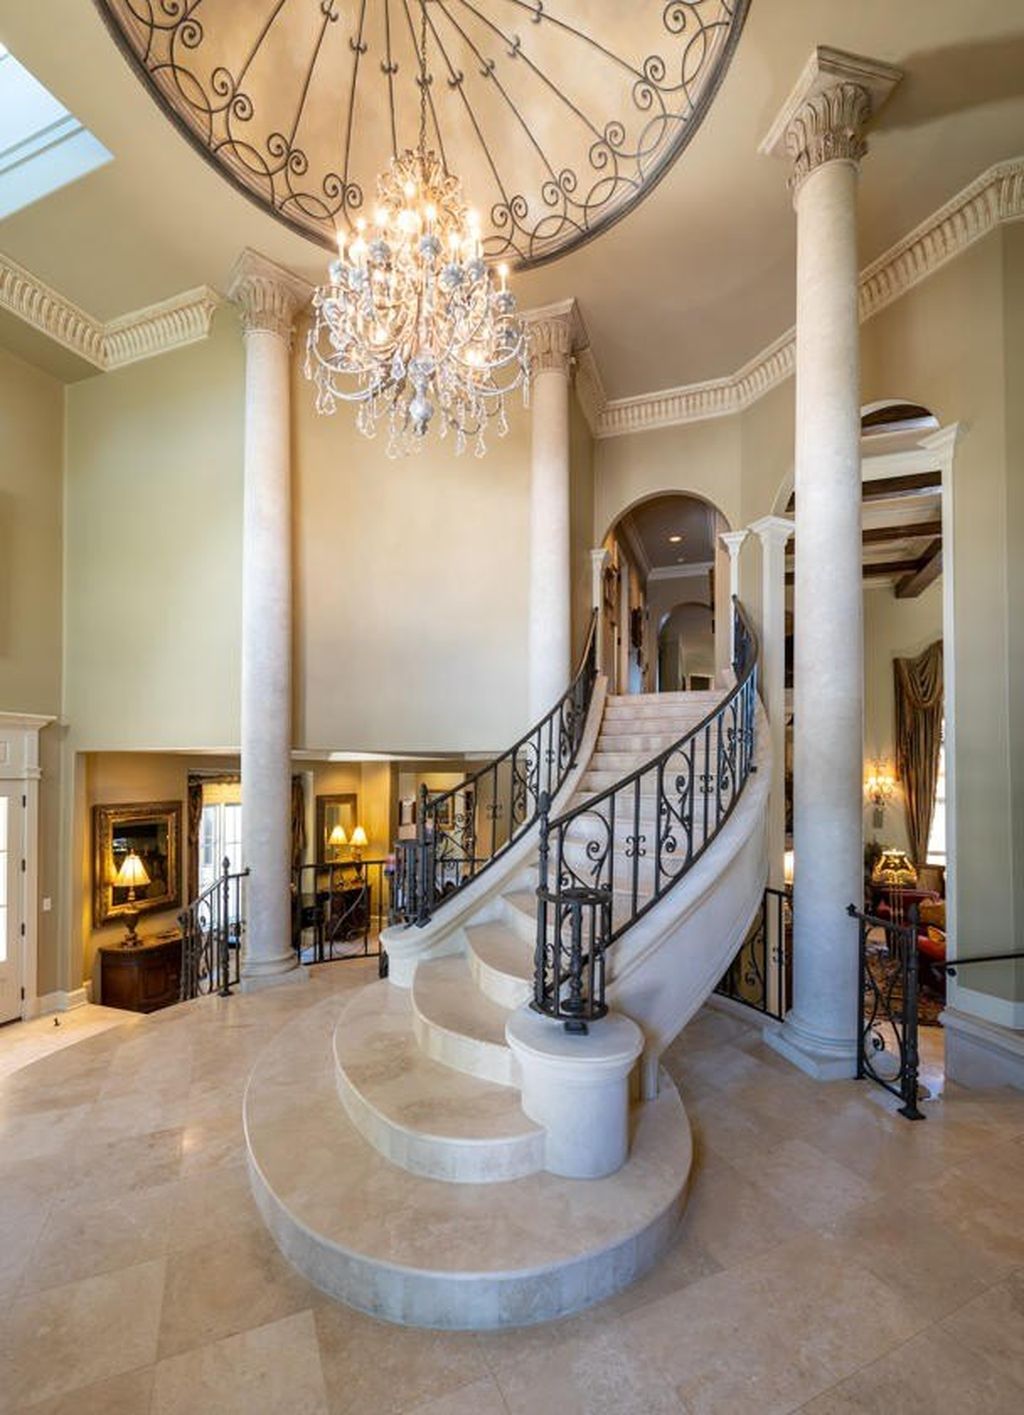 Stunning italian villa with picturesque alabama setting seeks 8. 59 million 17